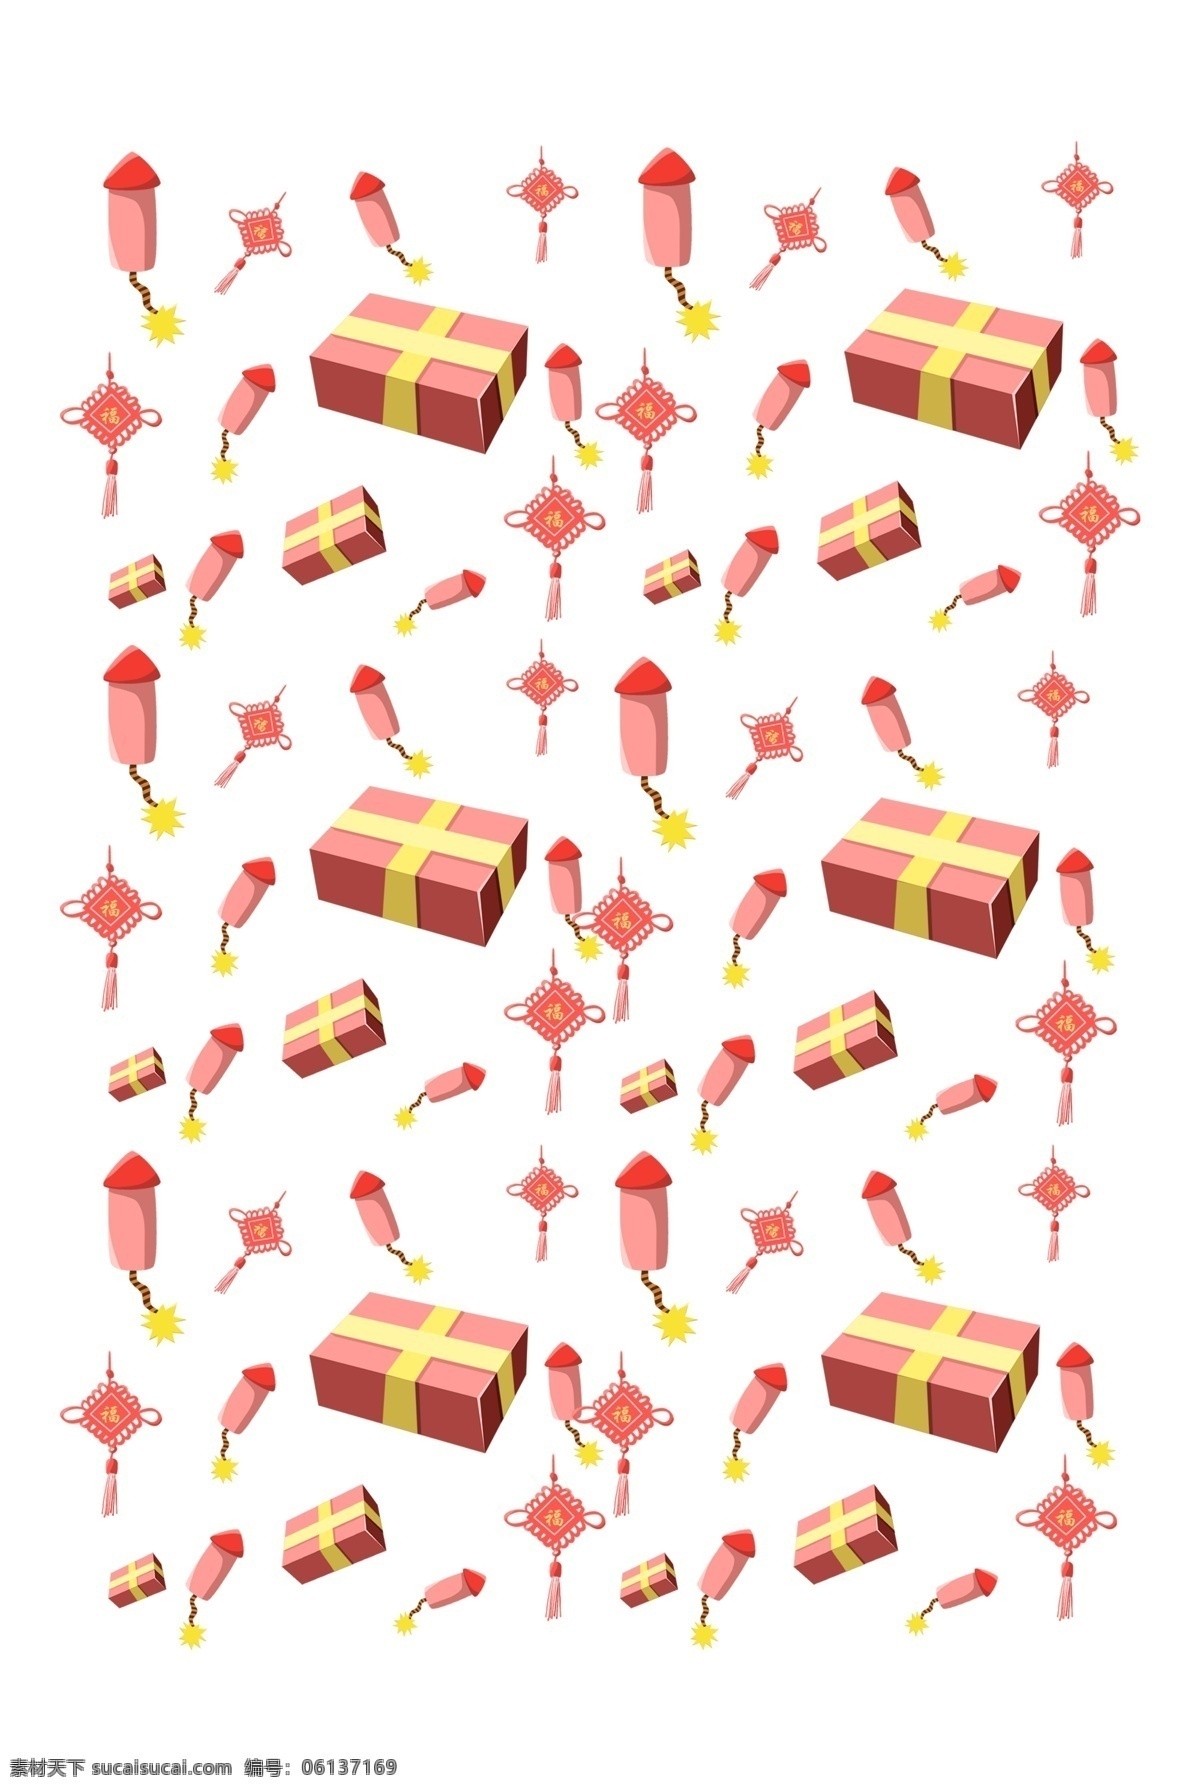 手绘 新年 礼盒 底纹 插画 红色的中国结 红色的礼盒 卡通插画 手绘底纹插画 创意水果底纹 黄色的蝴蝶结